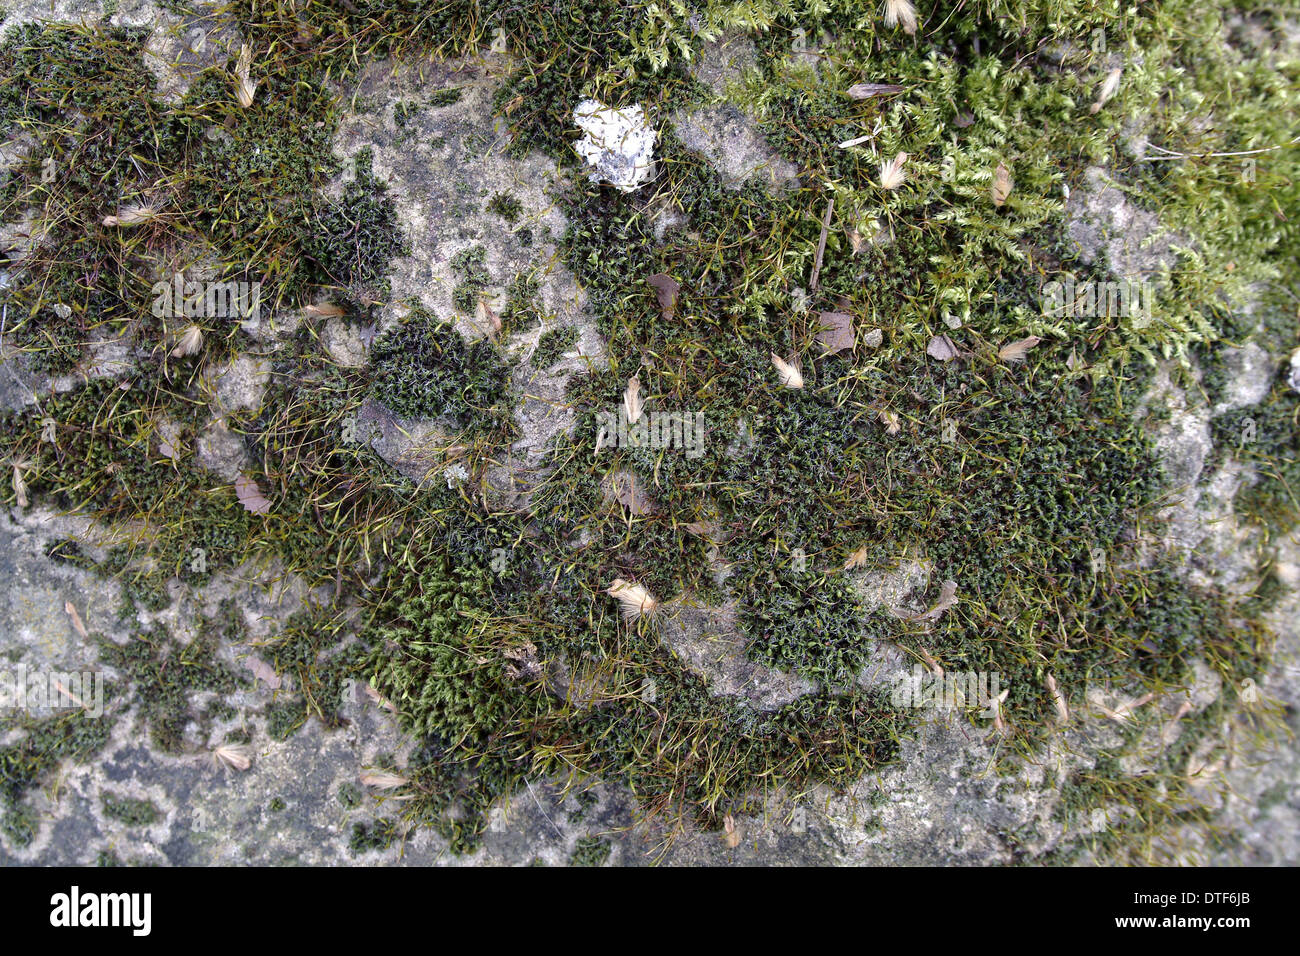 Bryum capillare, bryum mosses Stock Photo